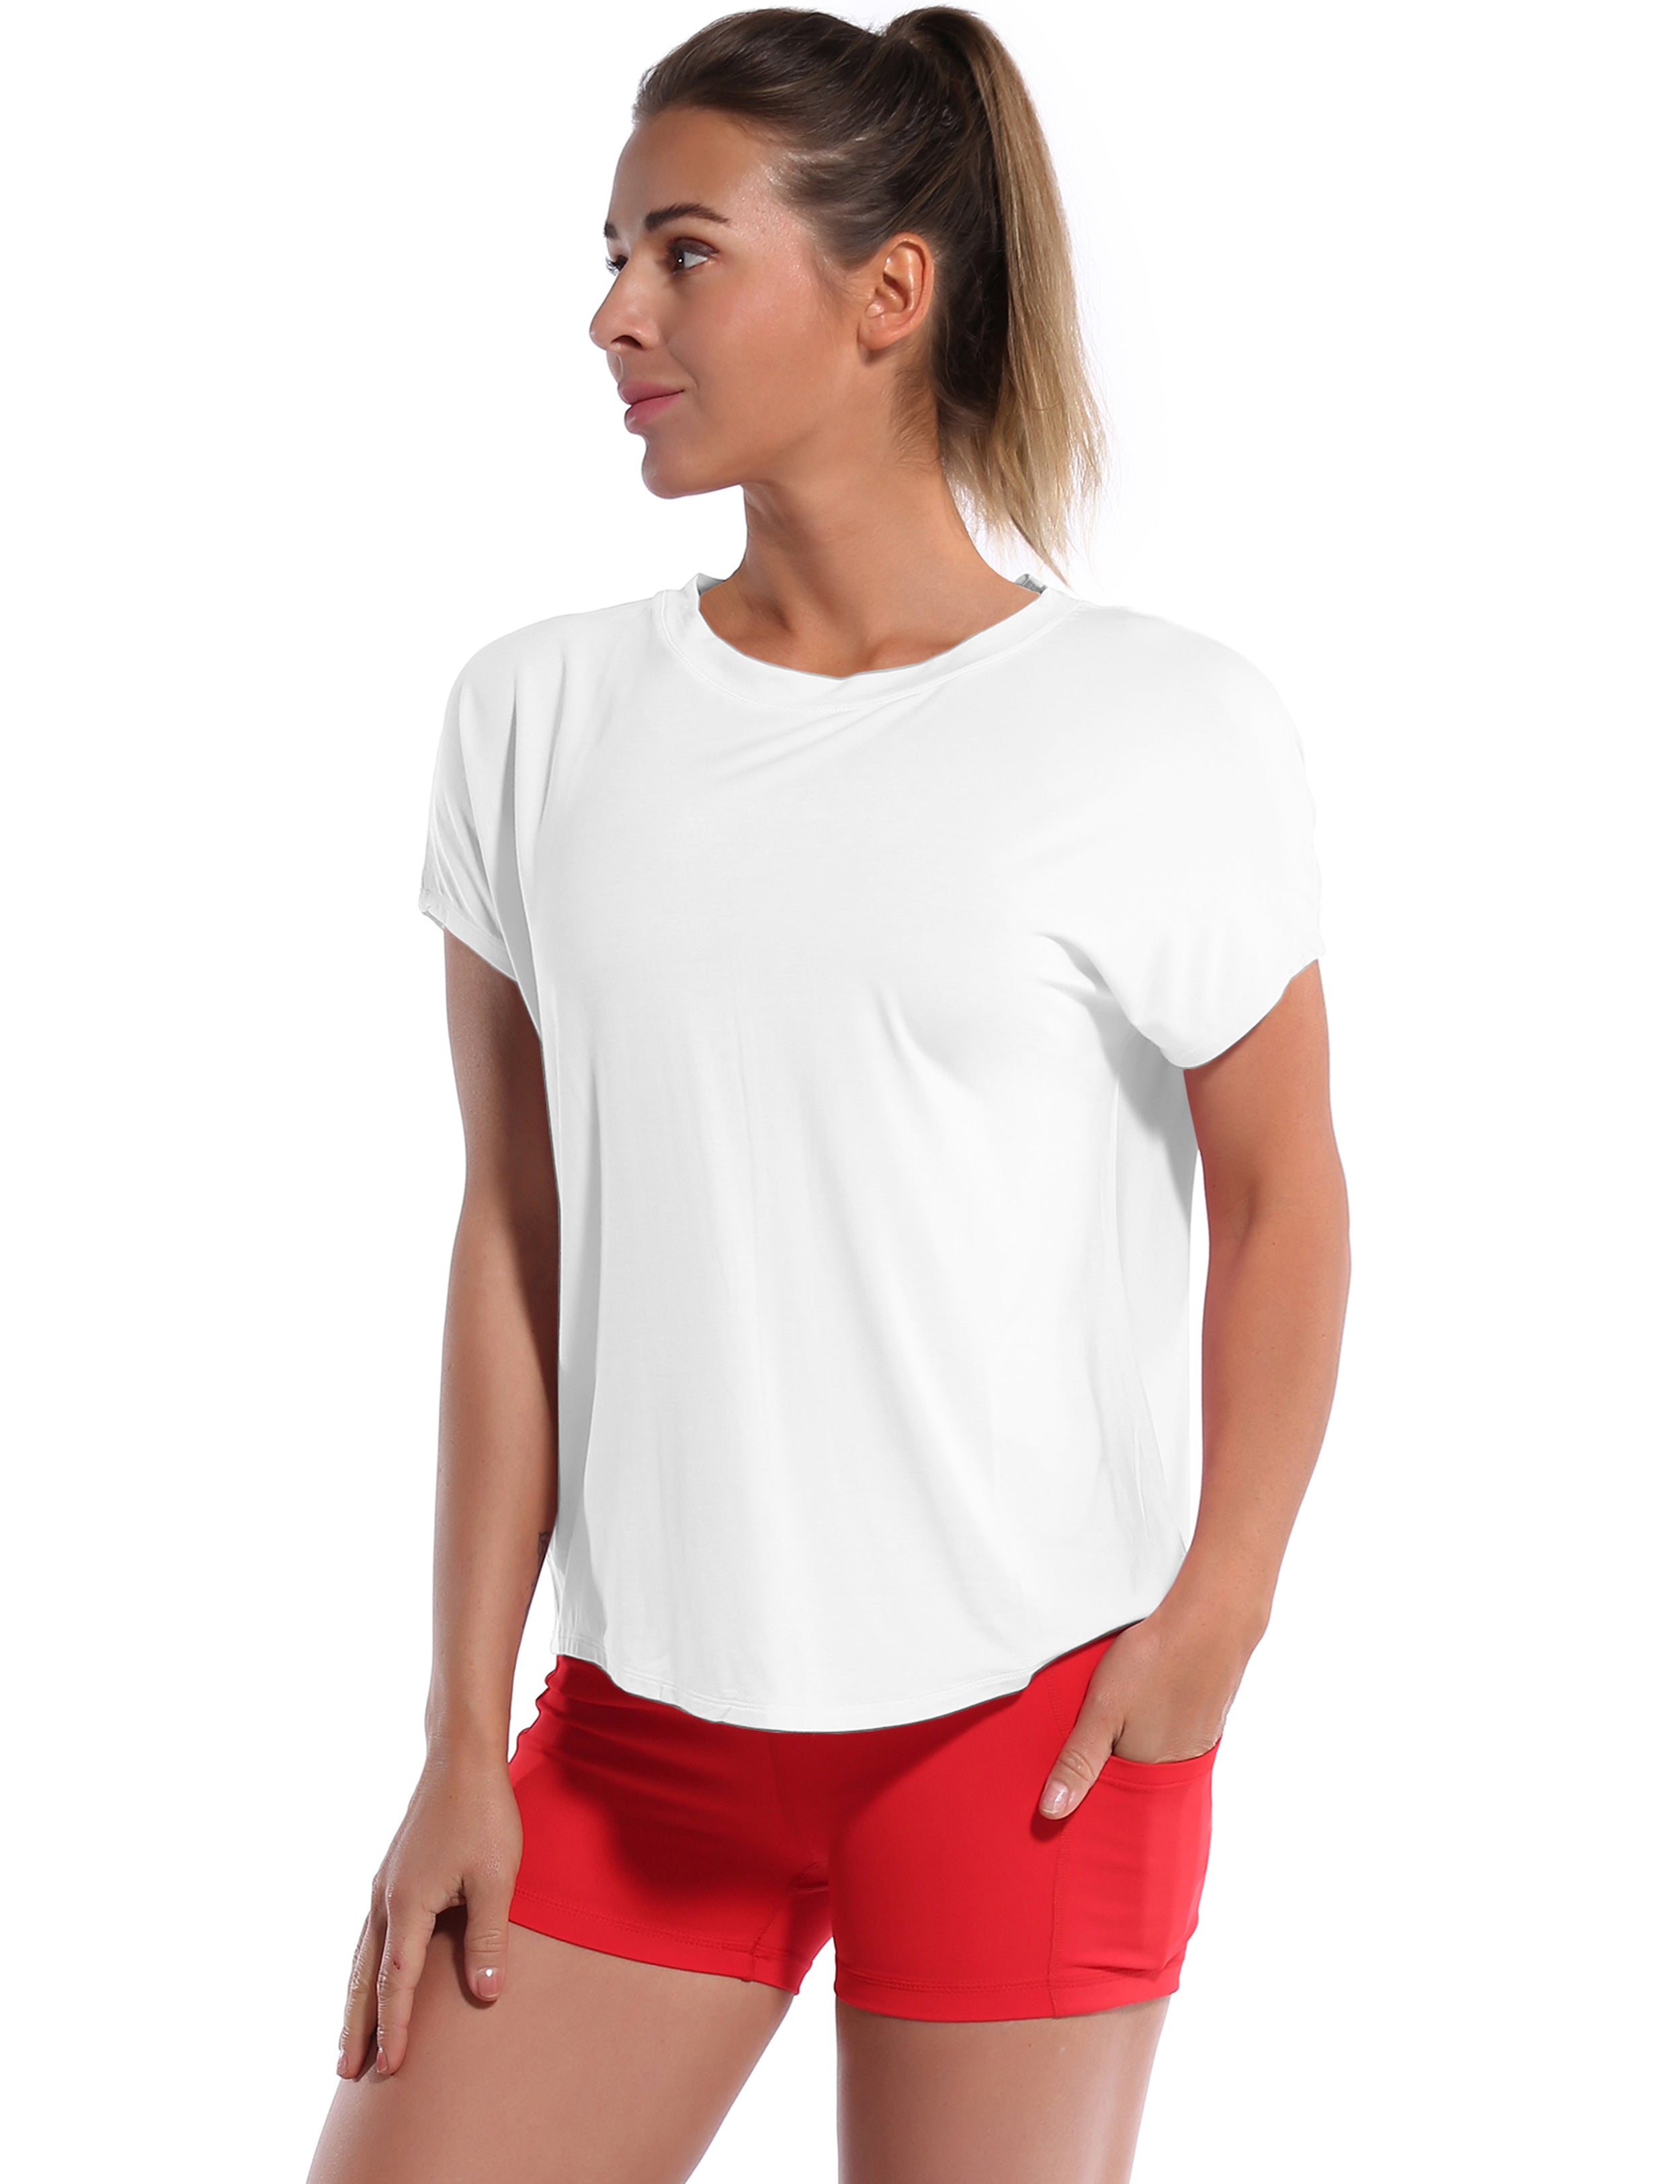 Hip Length Short Sleeve Shirt white